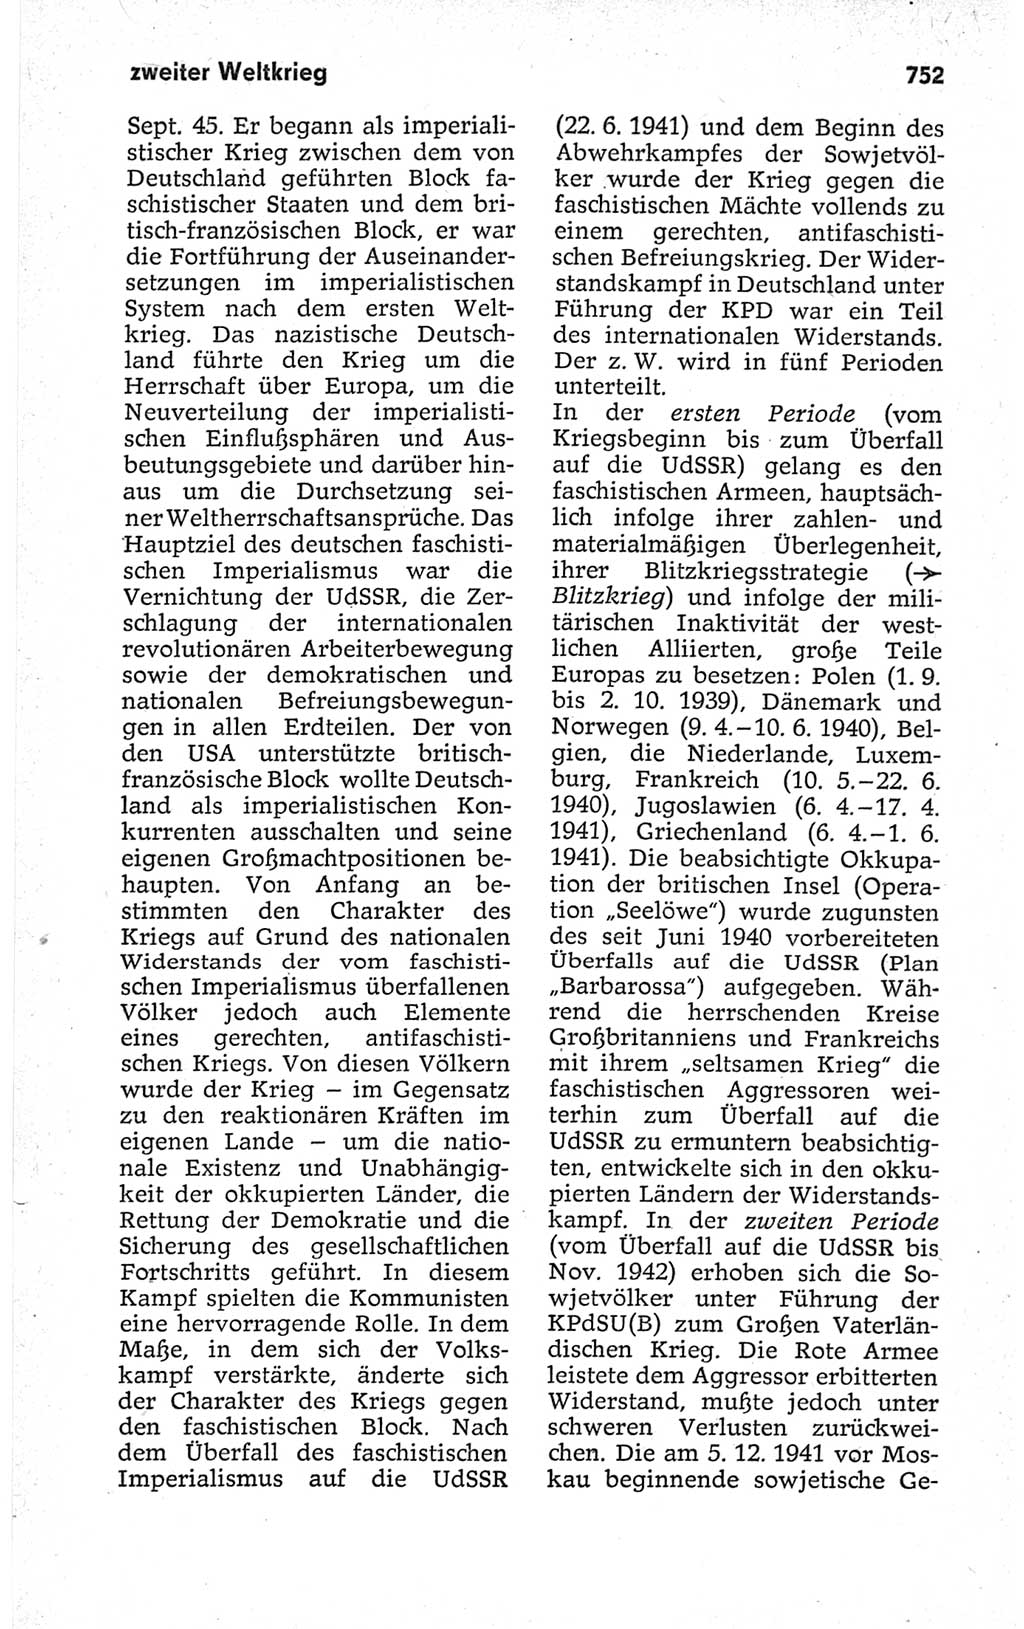 Kleines politisches Wörterbuch [Deutsche Demokratische Republik (DDR)] 1967, Seite 752 (Kl. pol. Wb. DDR 1967, S. 752)